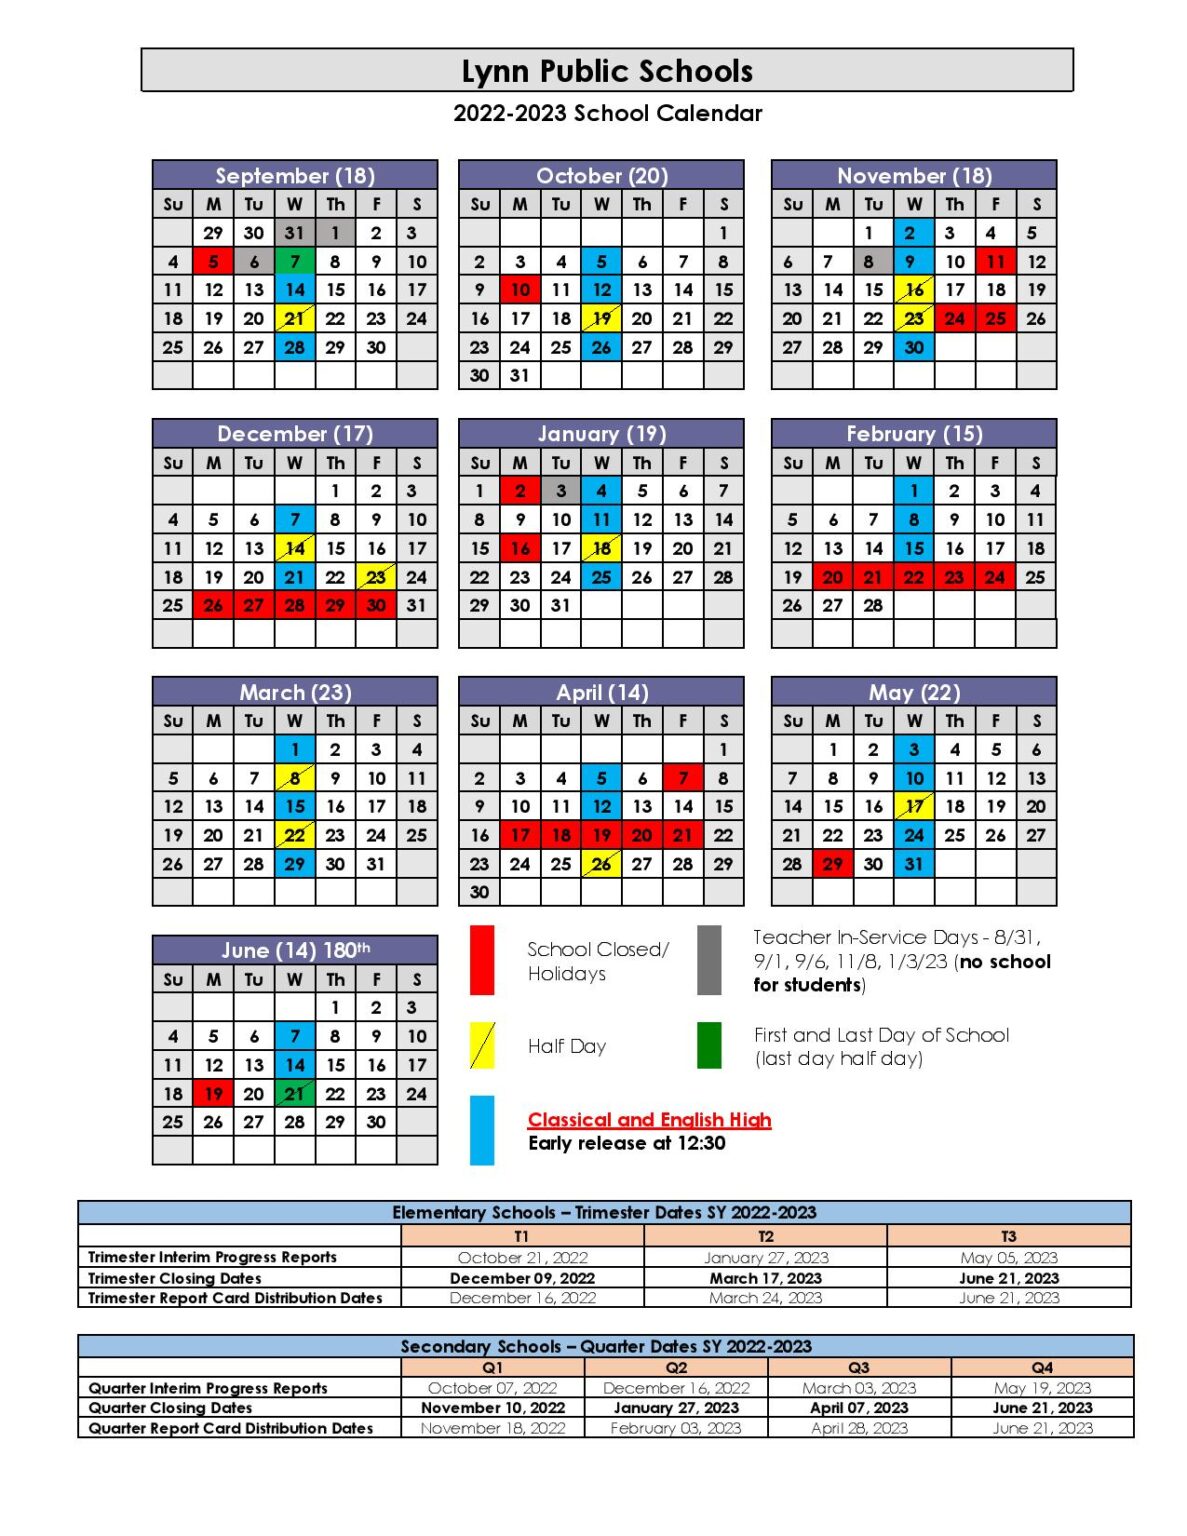 Lynn Public Schools Calendar 2022-2023 in PDF